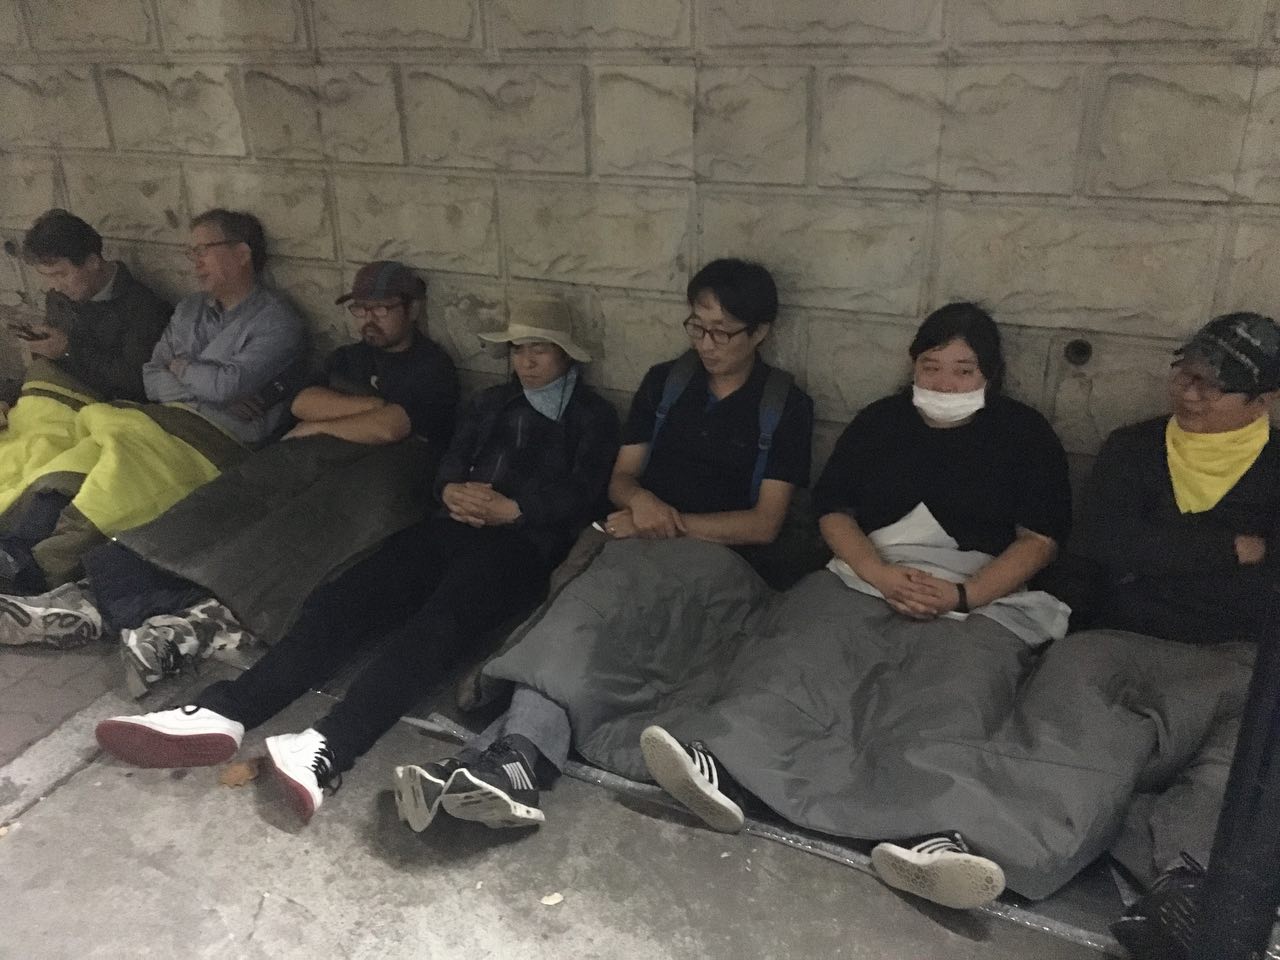 백남기농민 위급소식과 강제부검 소식을 듣고 달려온 시민들. 아스팔트바닥에 앉아 밤을 보내는 모습